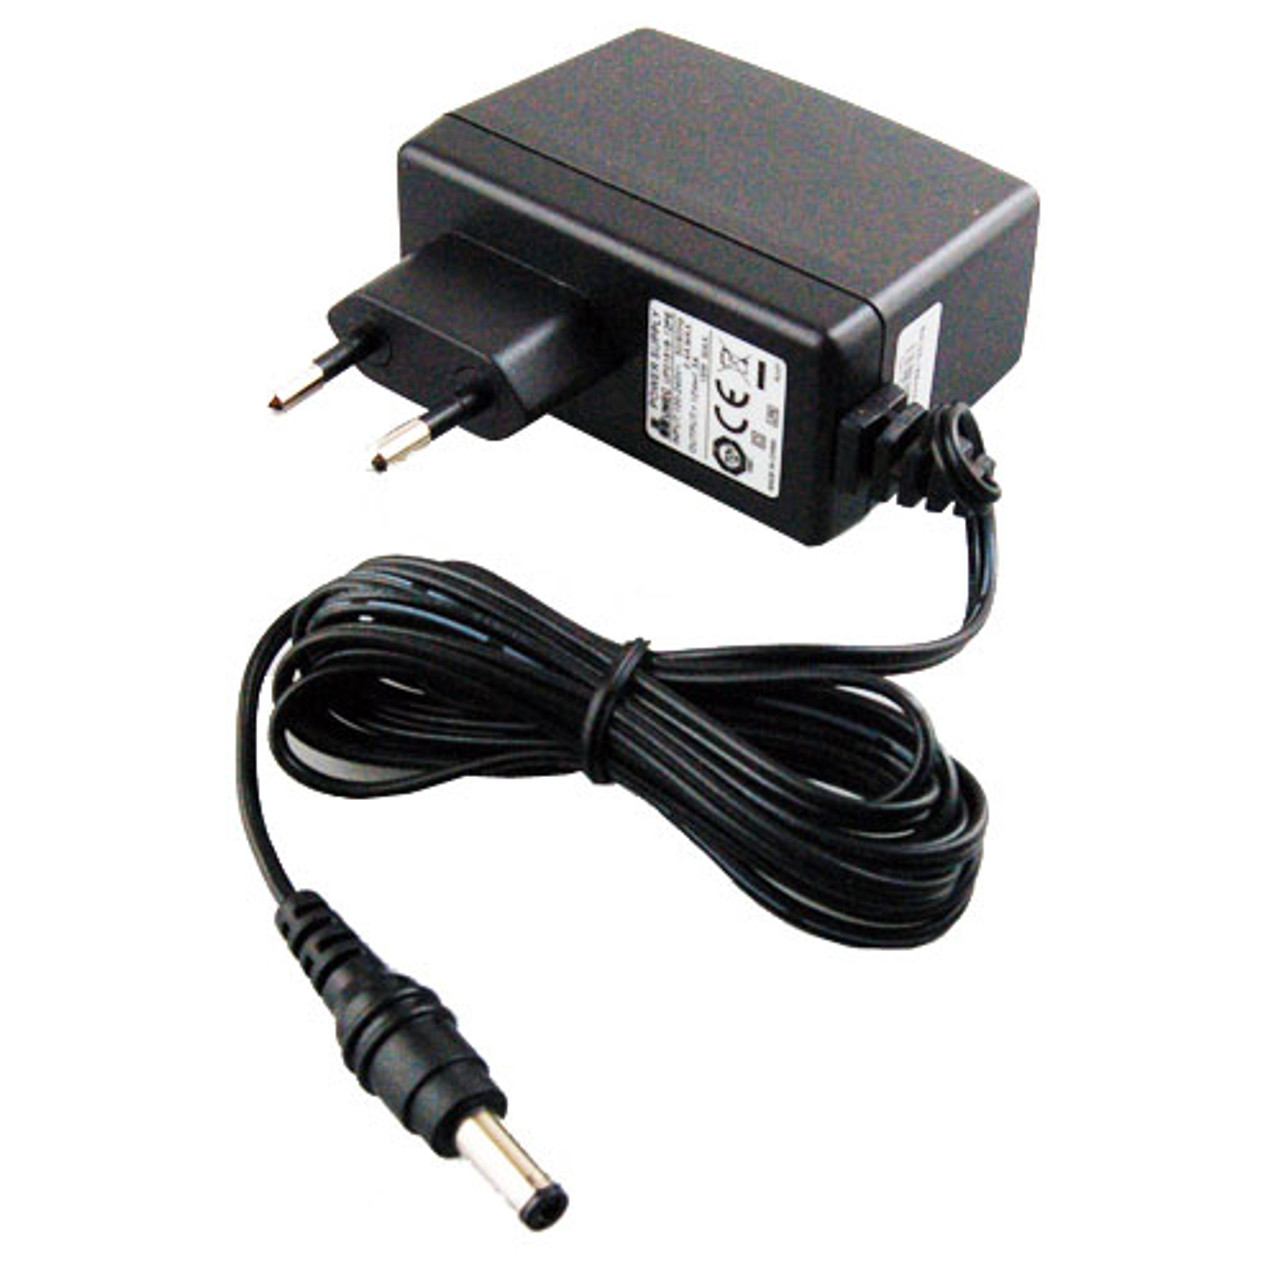 ACEU-12V - AC 90-240V input adapter for FIB1 and FMC series converters, EU 220V round